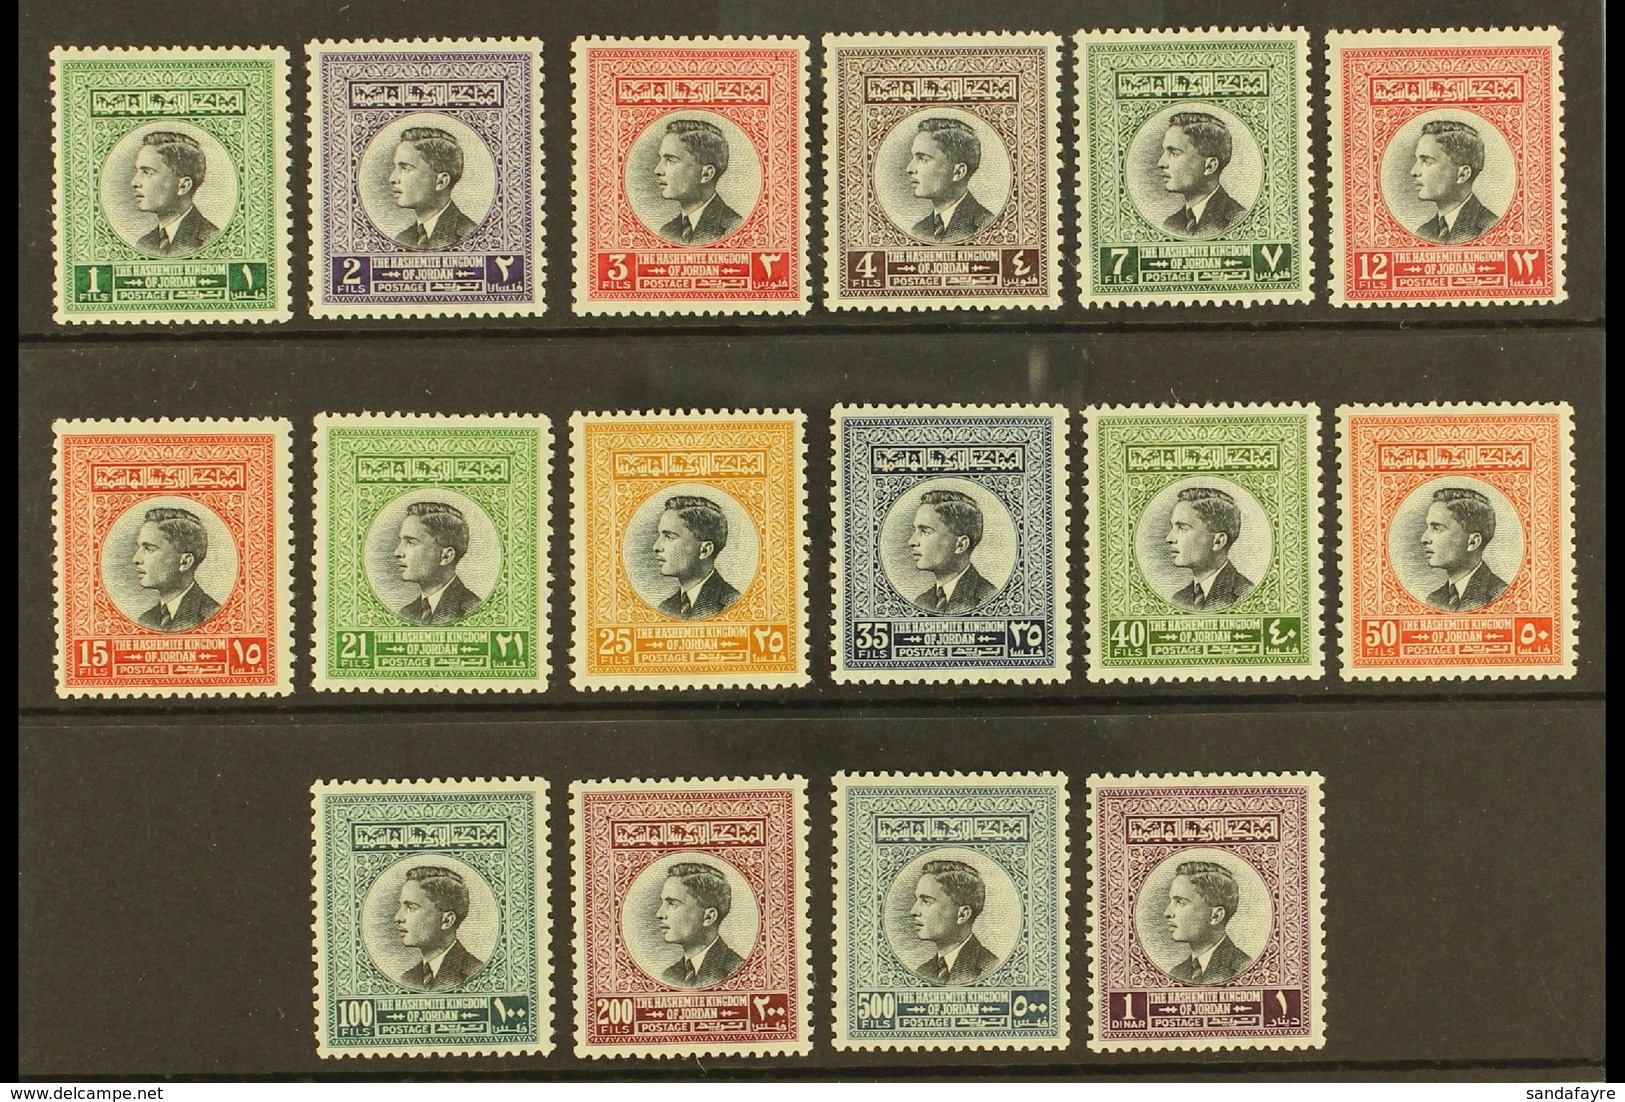 1959 King Hussein Complete Definitive Set, SG 480/495, Superb Never Hinged Mint. )16 Stamps) For More Images, Please Vis - Jordan